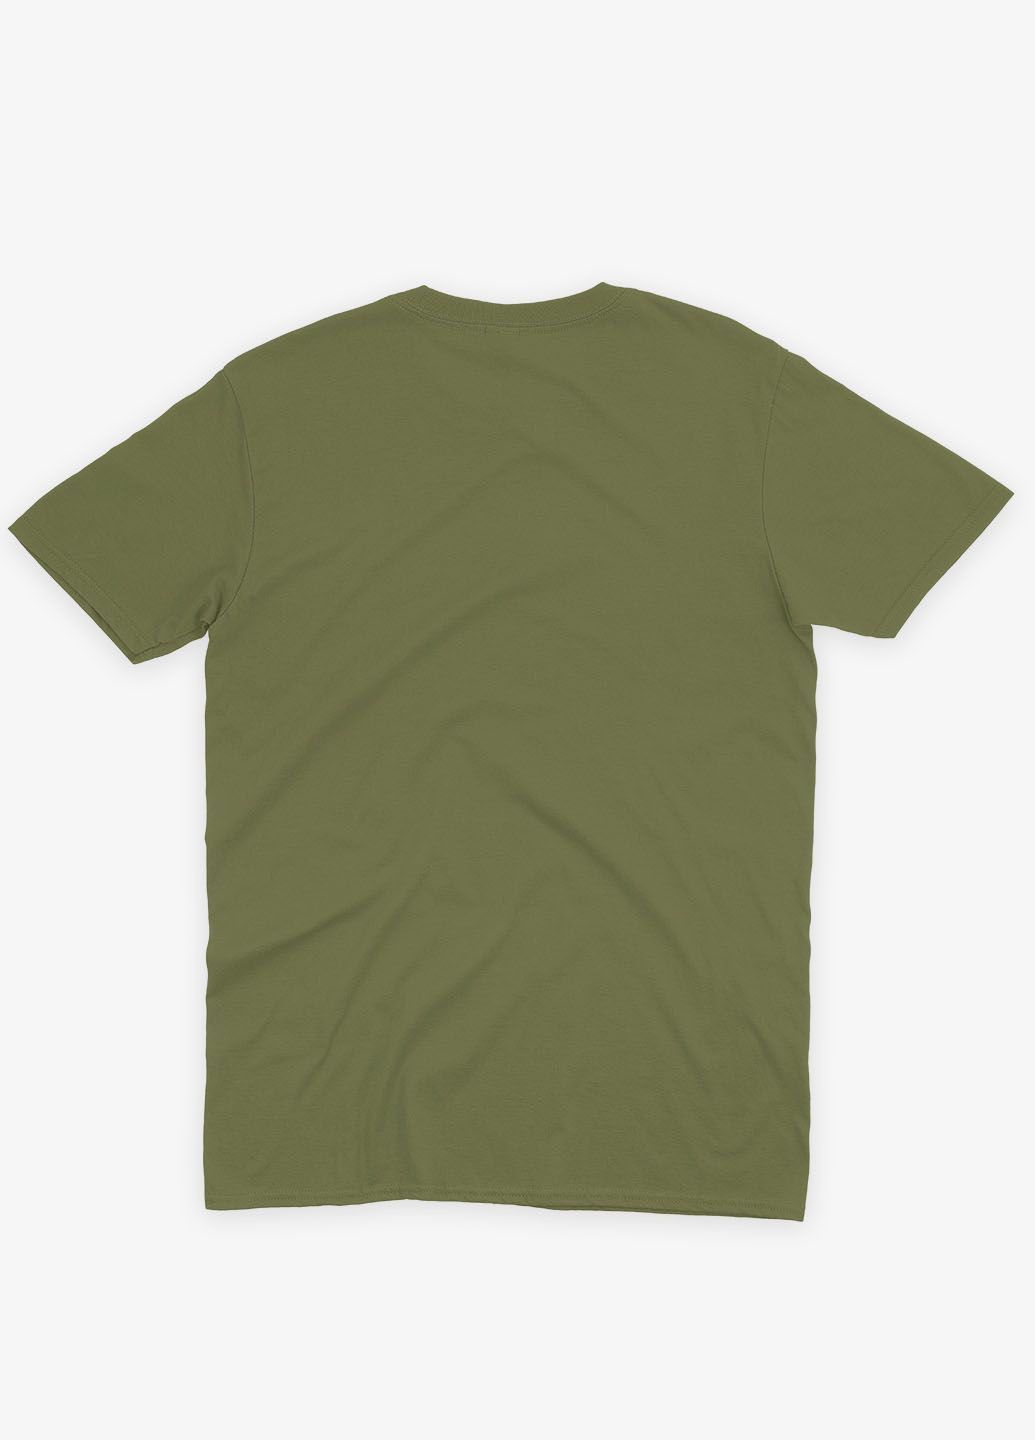 Хаки (оливковая) мужская футболка с принтом супервора - джокер (ts001-1-hgr-006-005-001) Modno